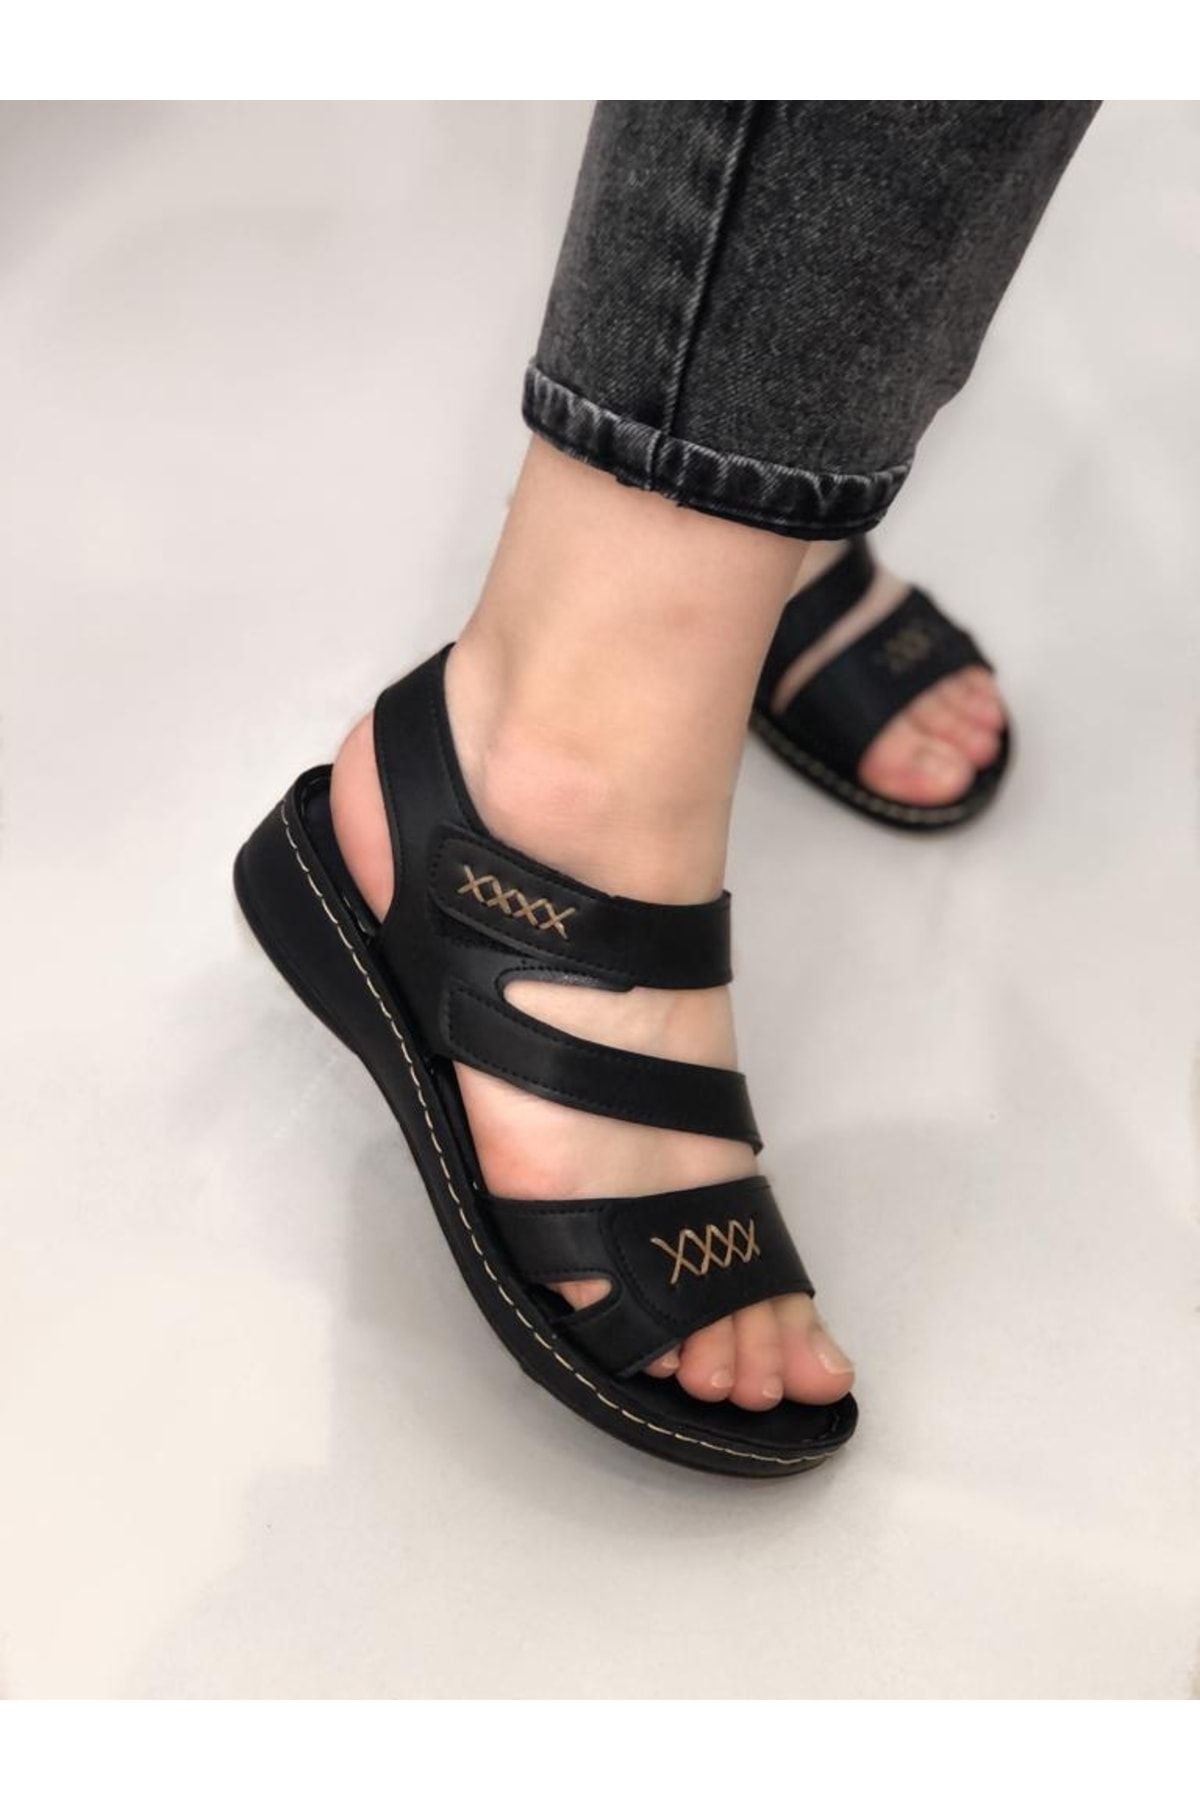 Büşra Sultan Ayakkabı Kadın Ortopedik / Anatomik Cırtlı Çok Bantlı Sandalet Siyah